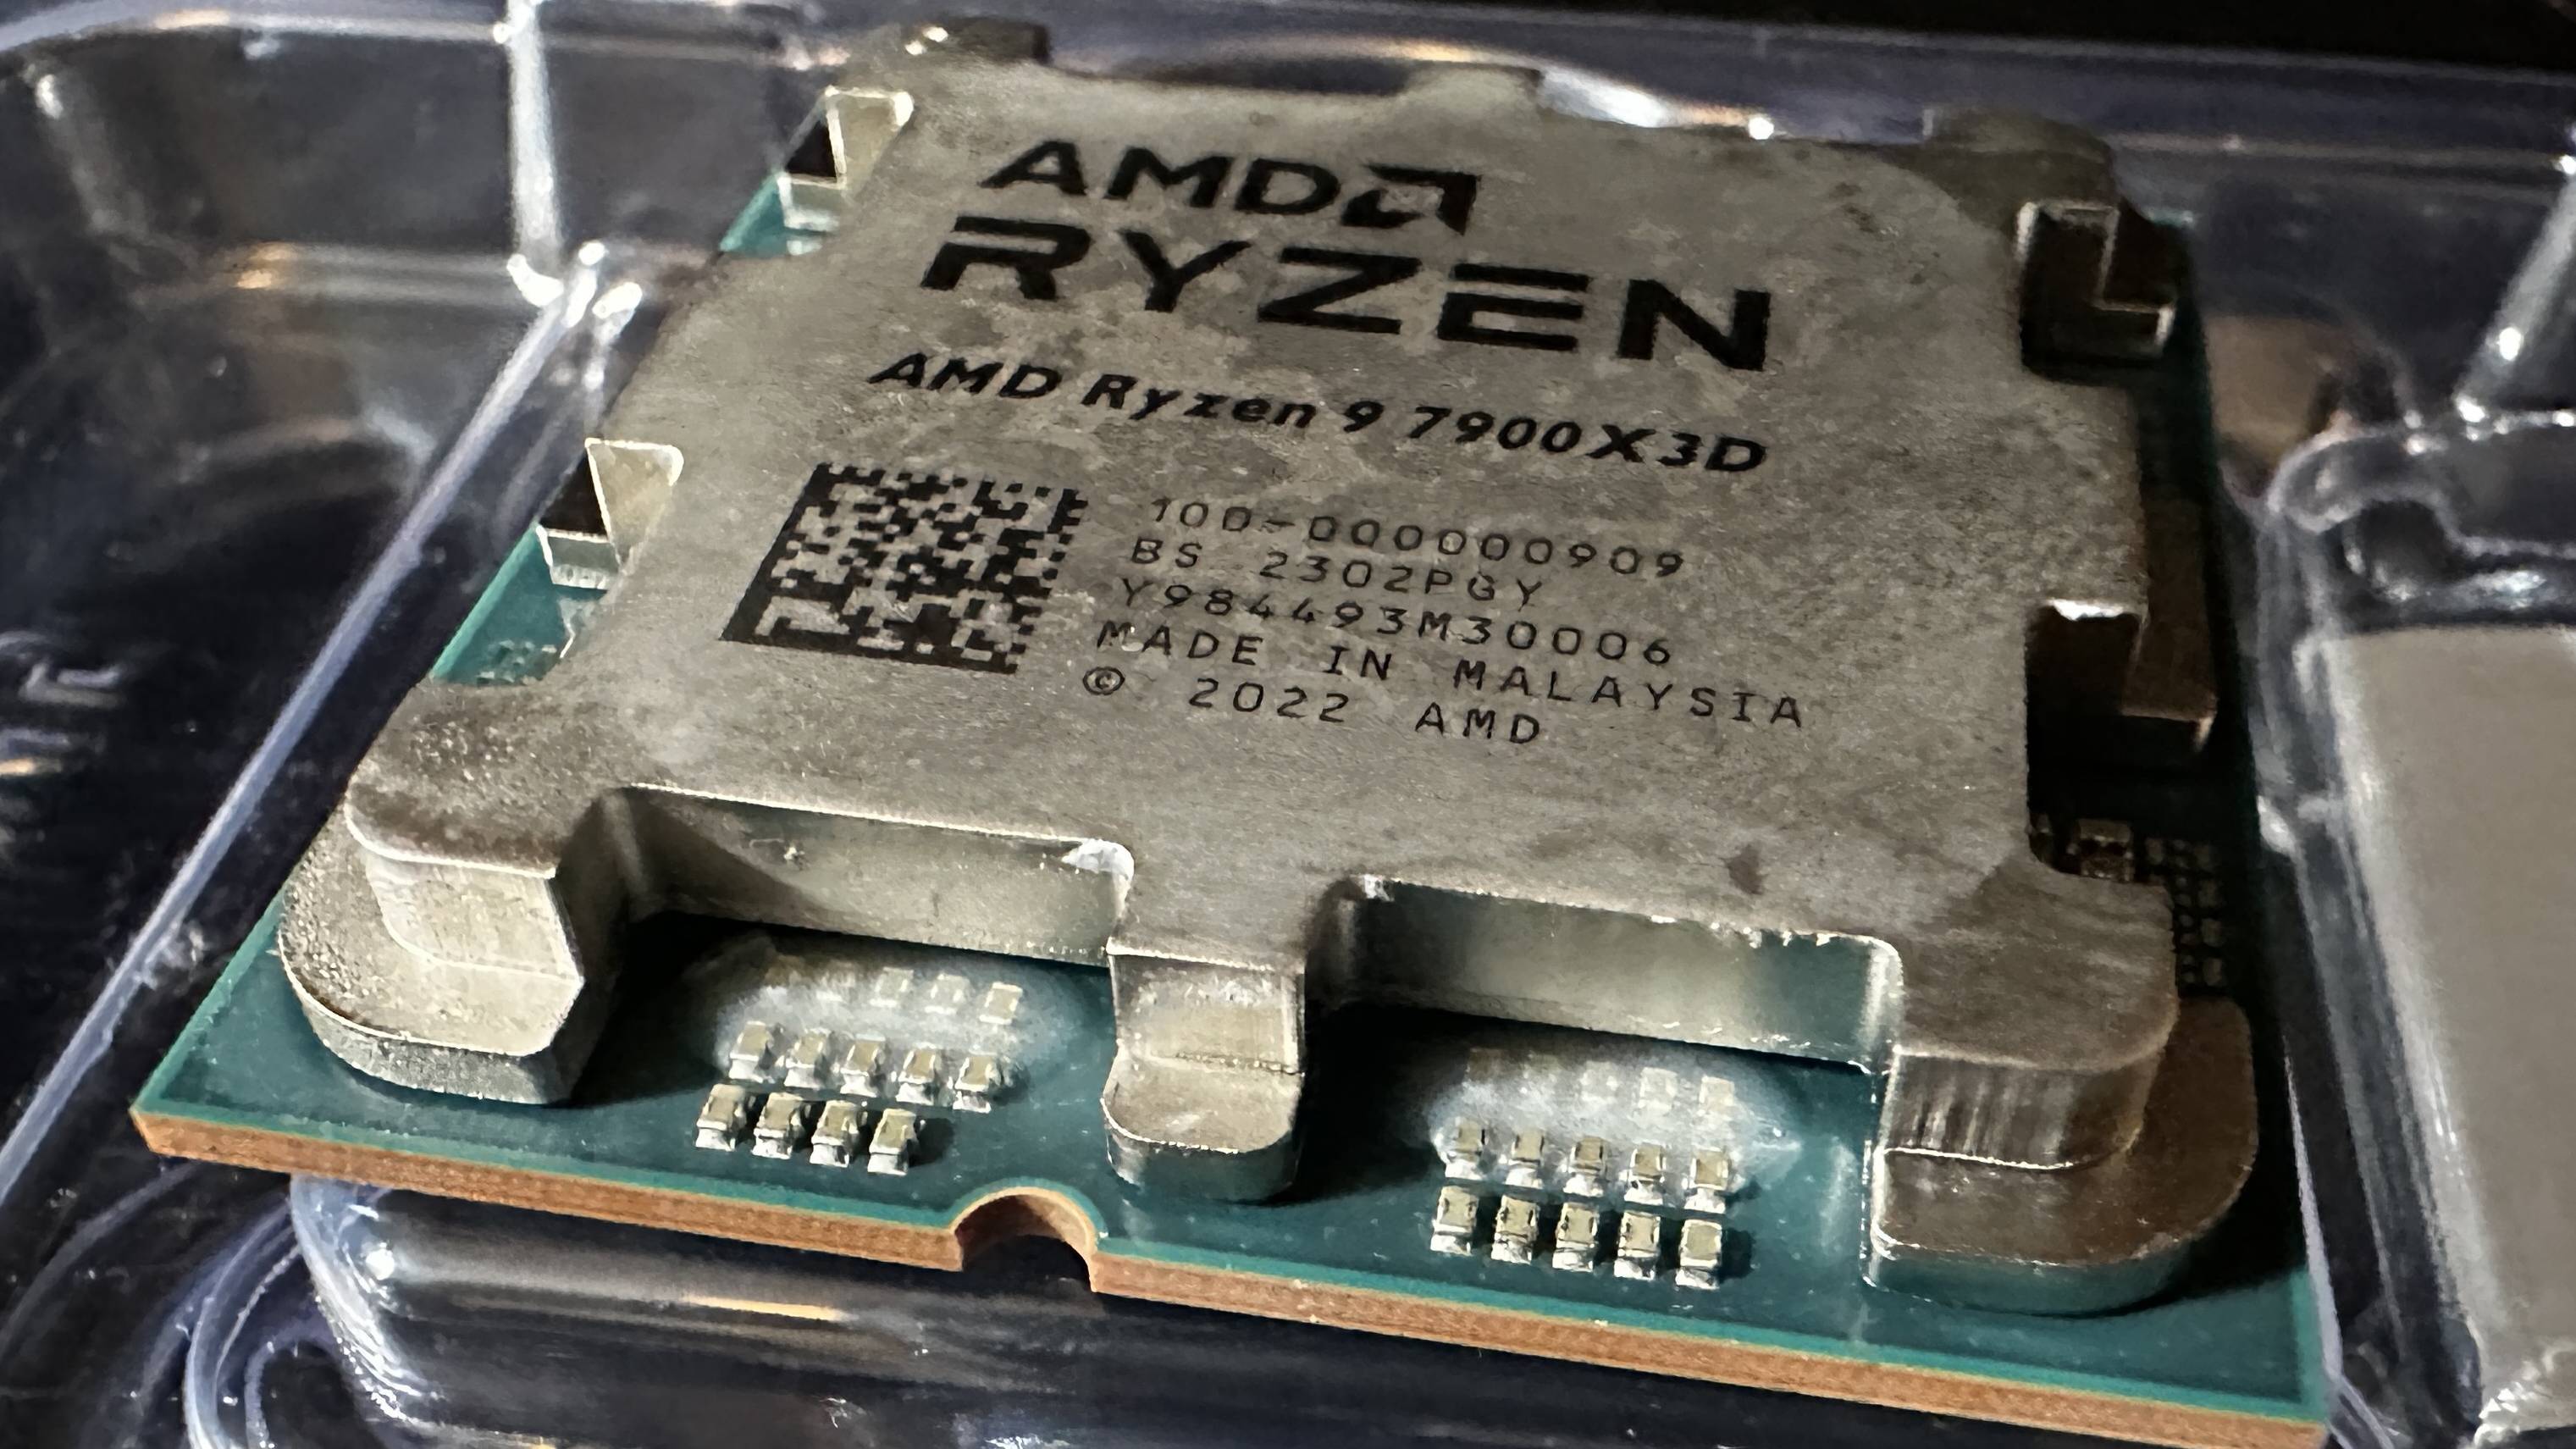 AMD Ryzen 9 7900X3D up close